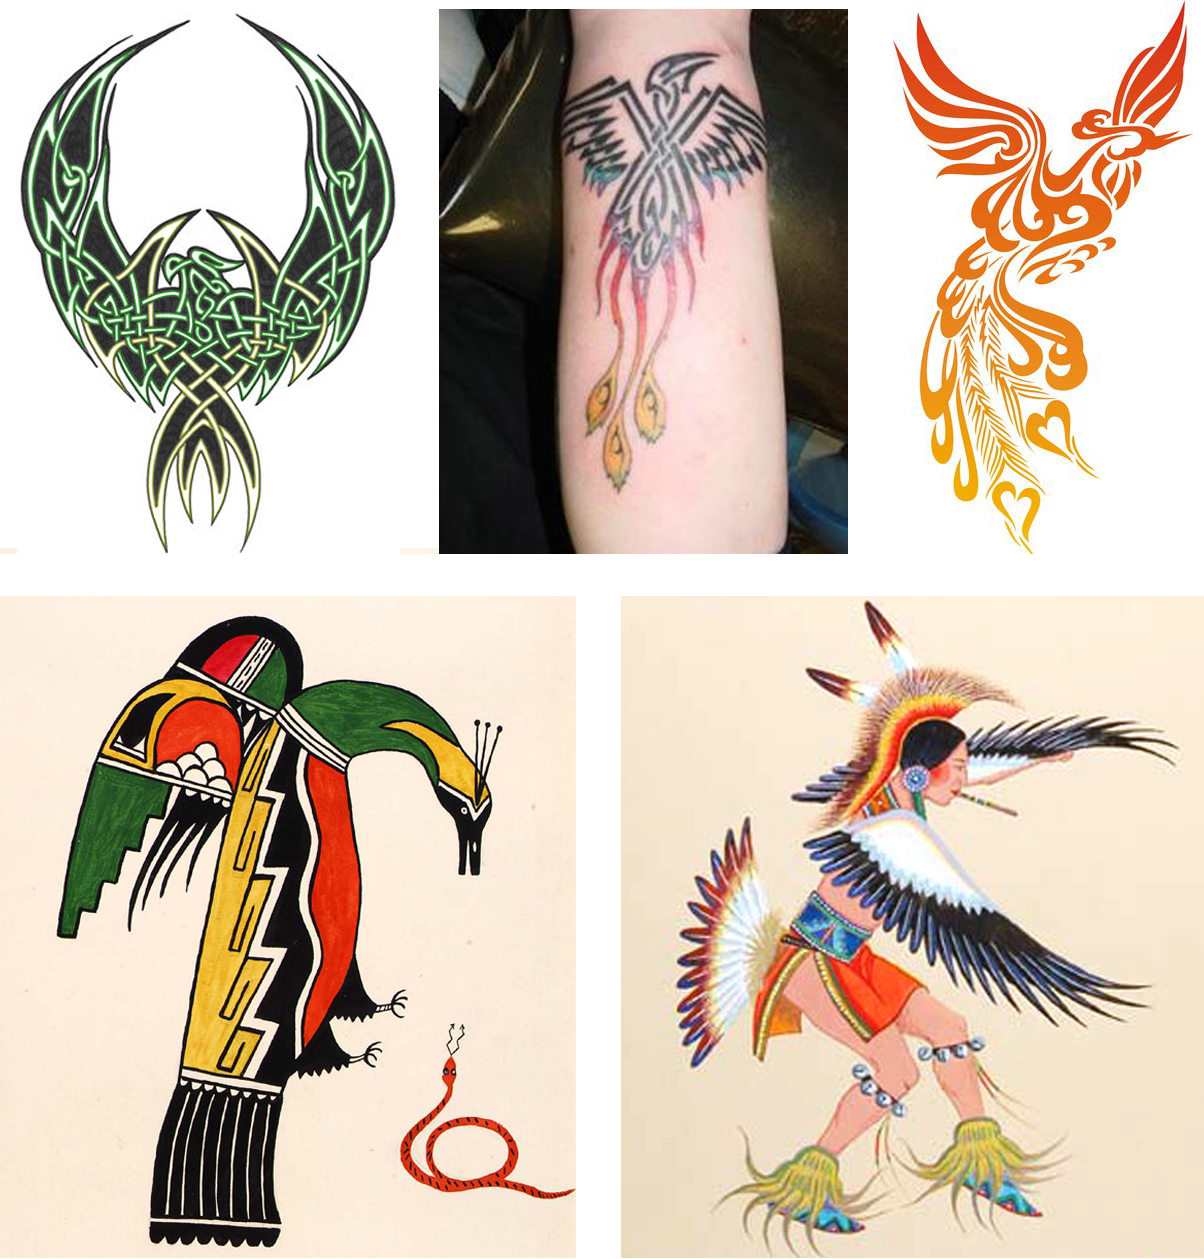 Top row phoenix tattoo